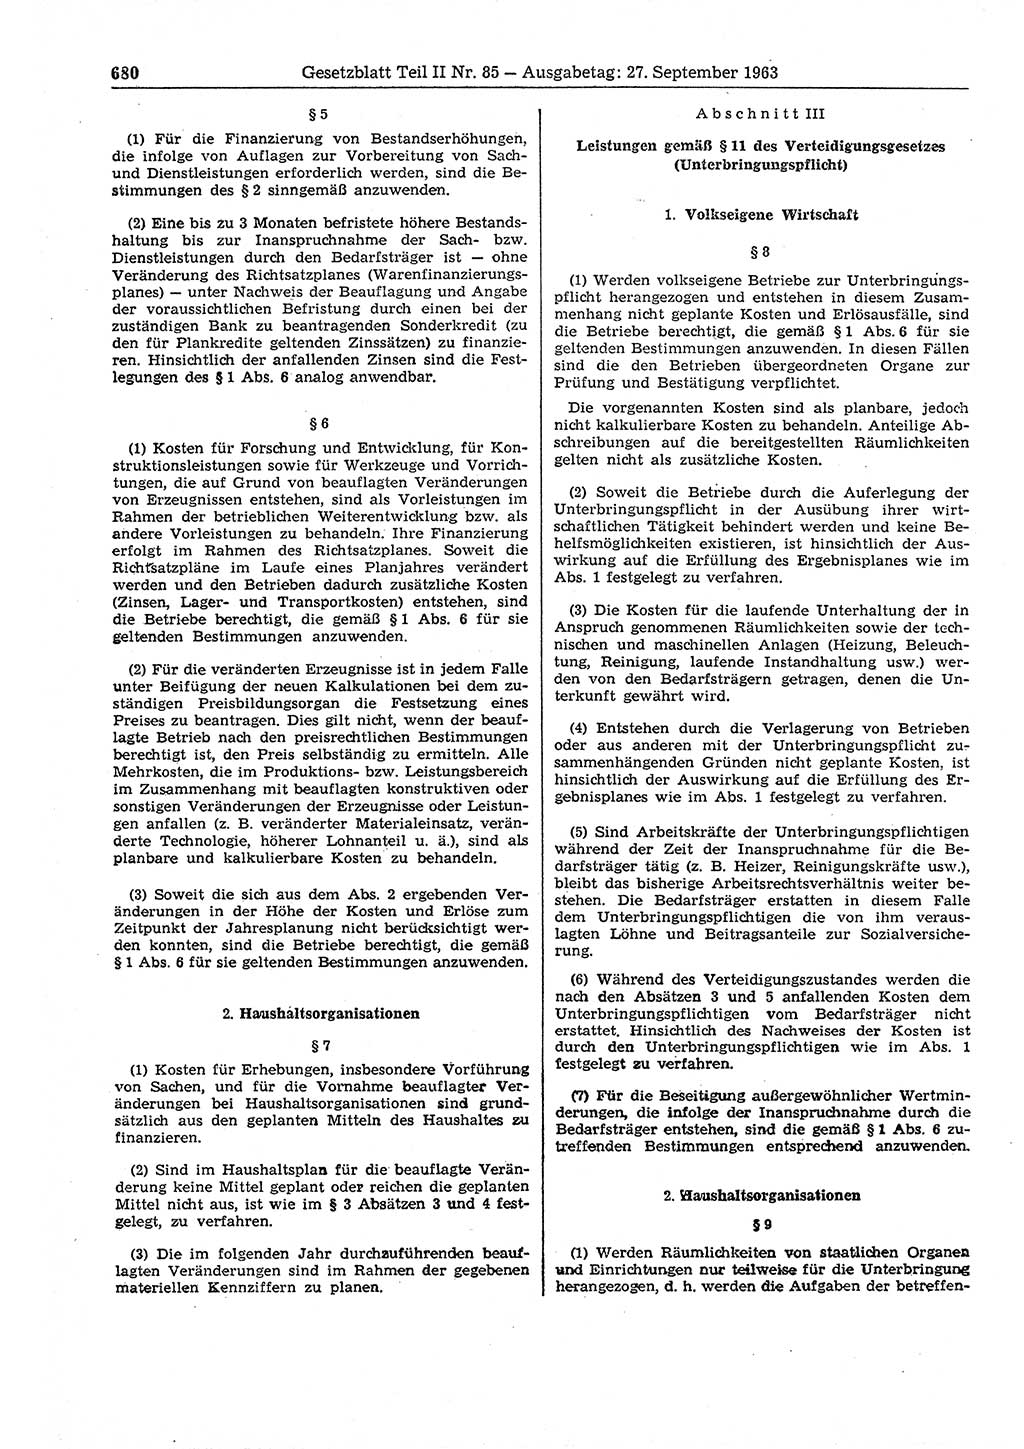 Gesetzblatt (GBl.) der Deutschen Demokratischen Republik (DDR) Teil ⅠⅠ 1963, Seite 680 (GBl. DDR ⅠⅠ 1963, S. 680)